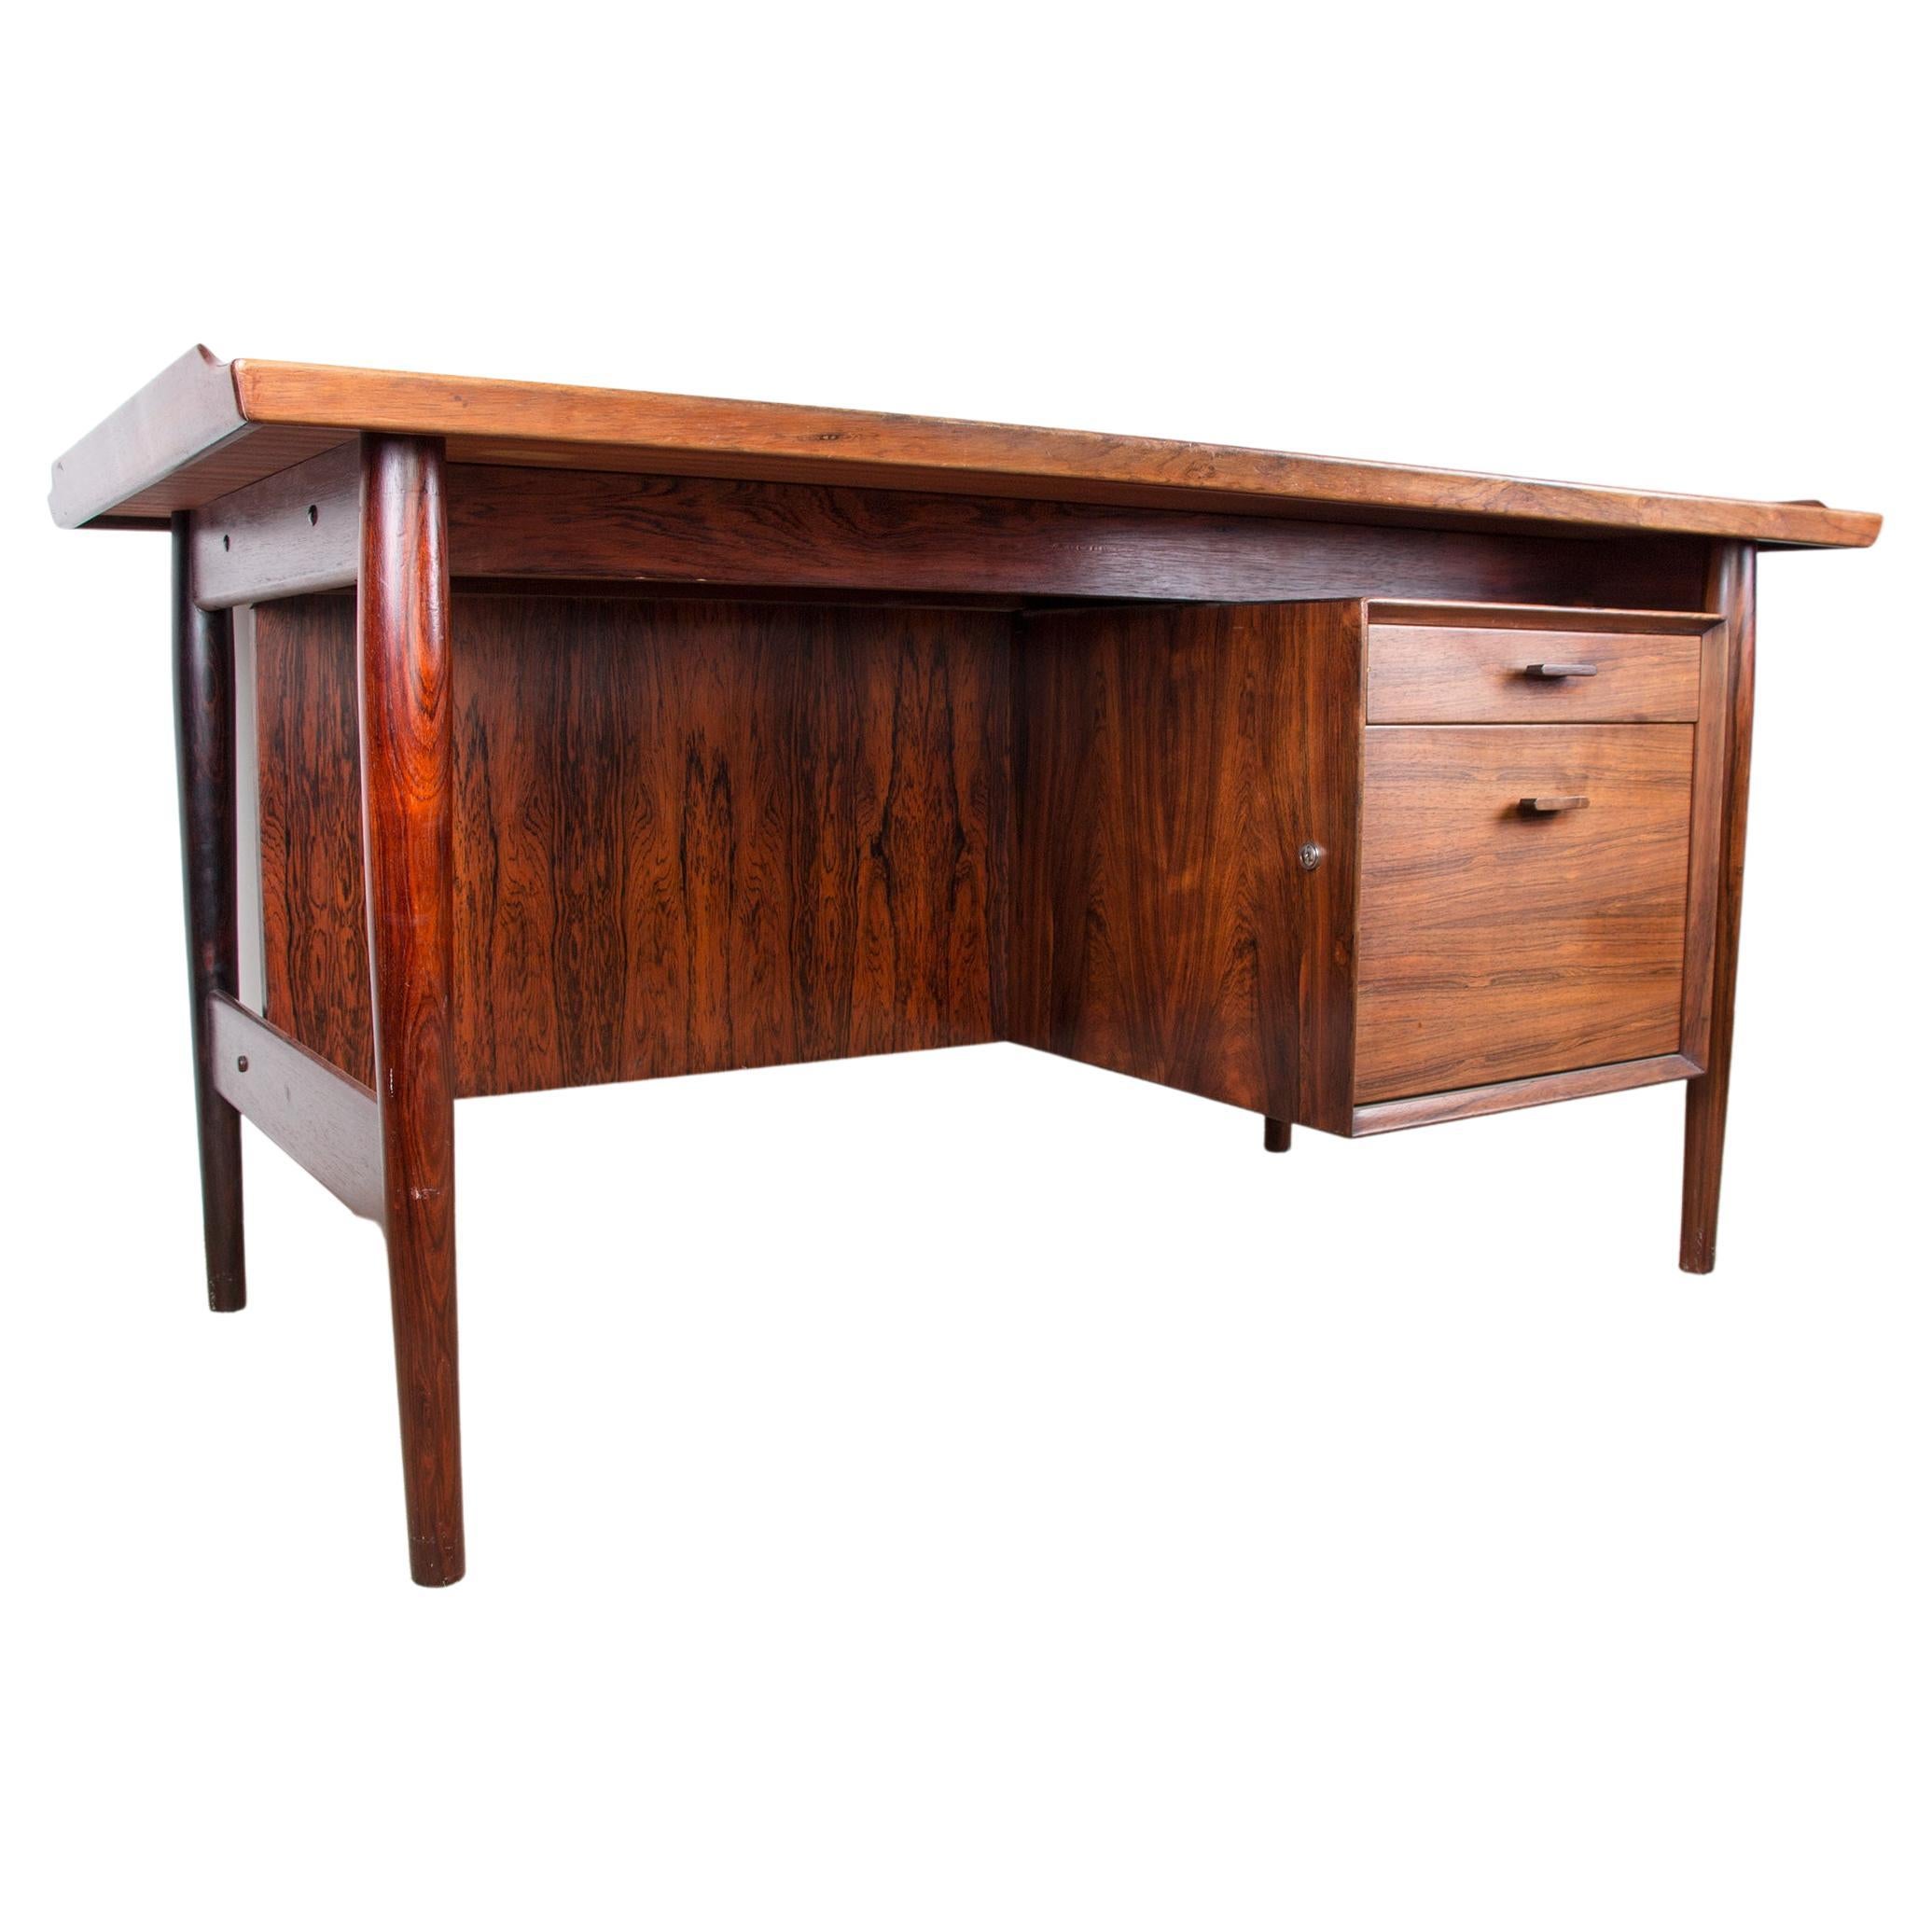 Danish Rio Rosewood Desk Model 404 by Arne Vodder for Sibast Mobler, 1960